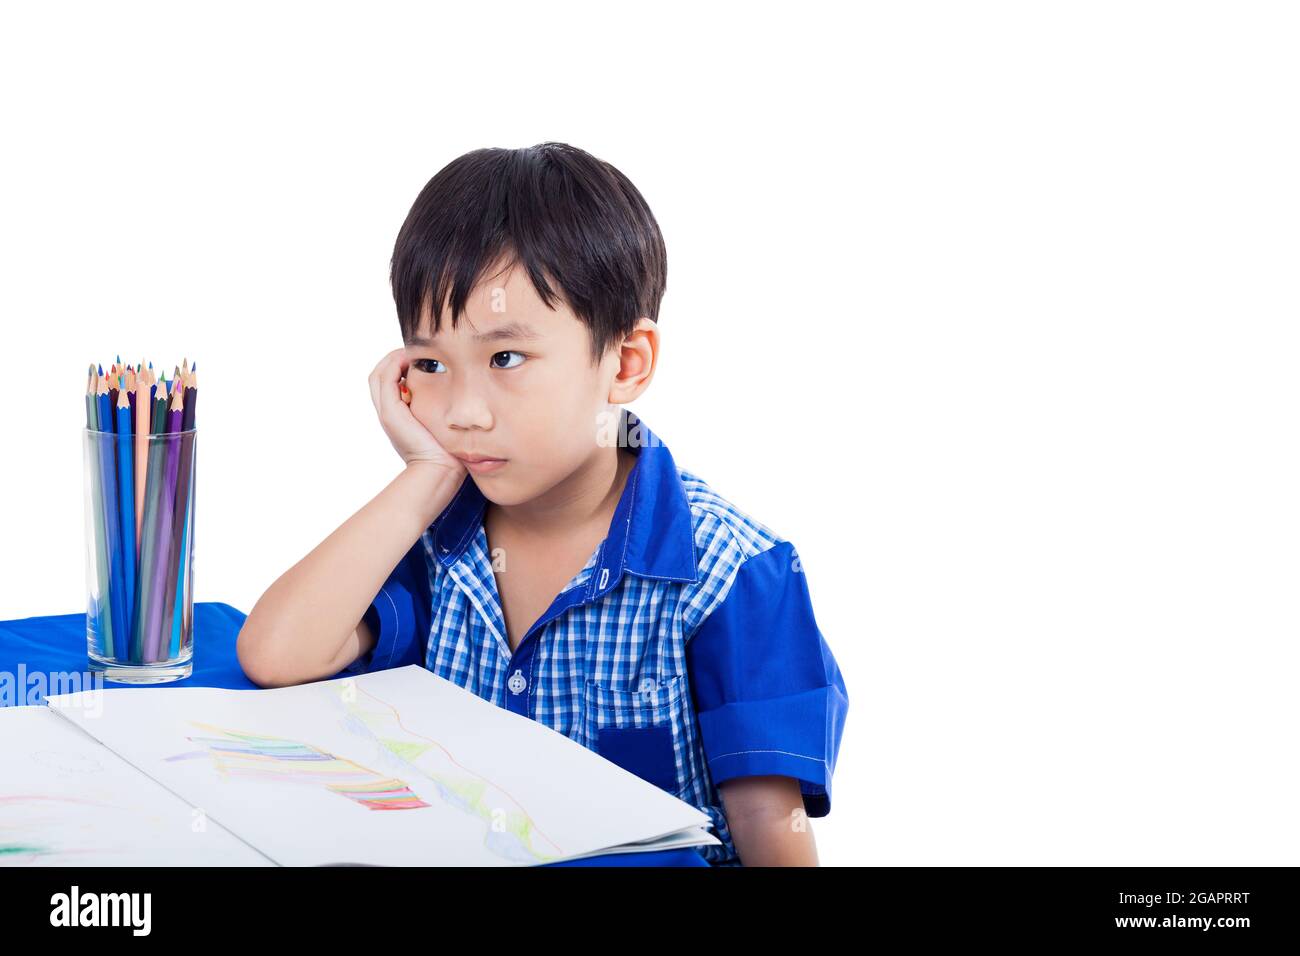 Kleiner asiatischer (thailändischer) Junge denkt und langweilige Emotion mit Bildern Papier und Farbstifte, isoliert auf weißem Hintergrund, Bildungskonzept Stockfoto